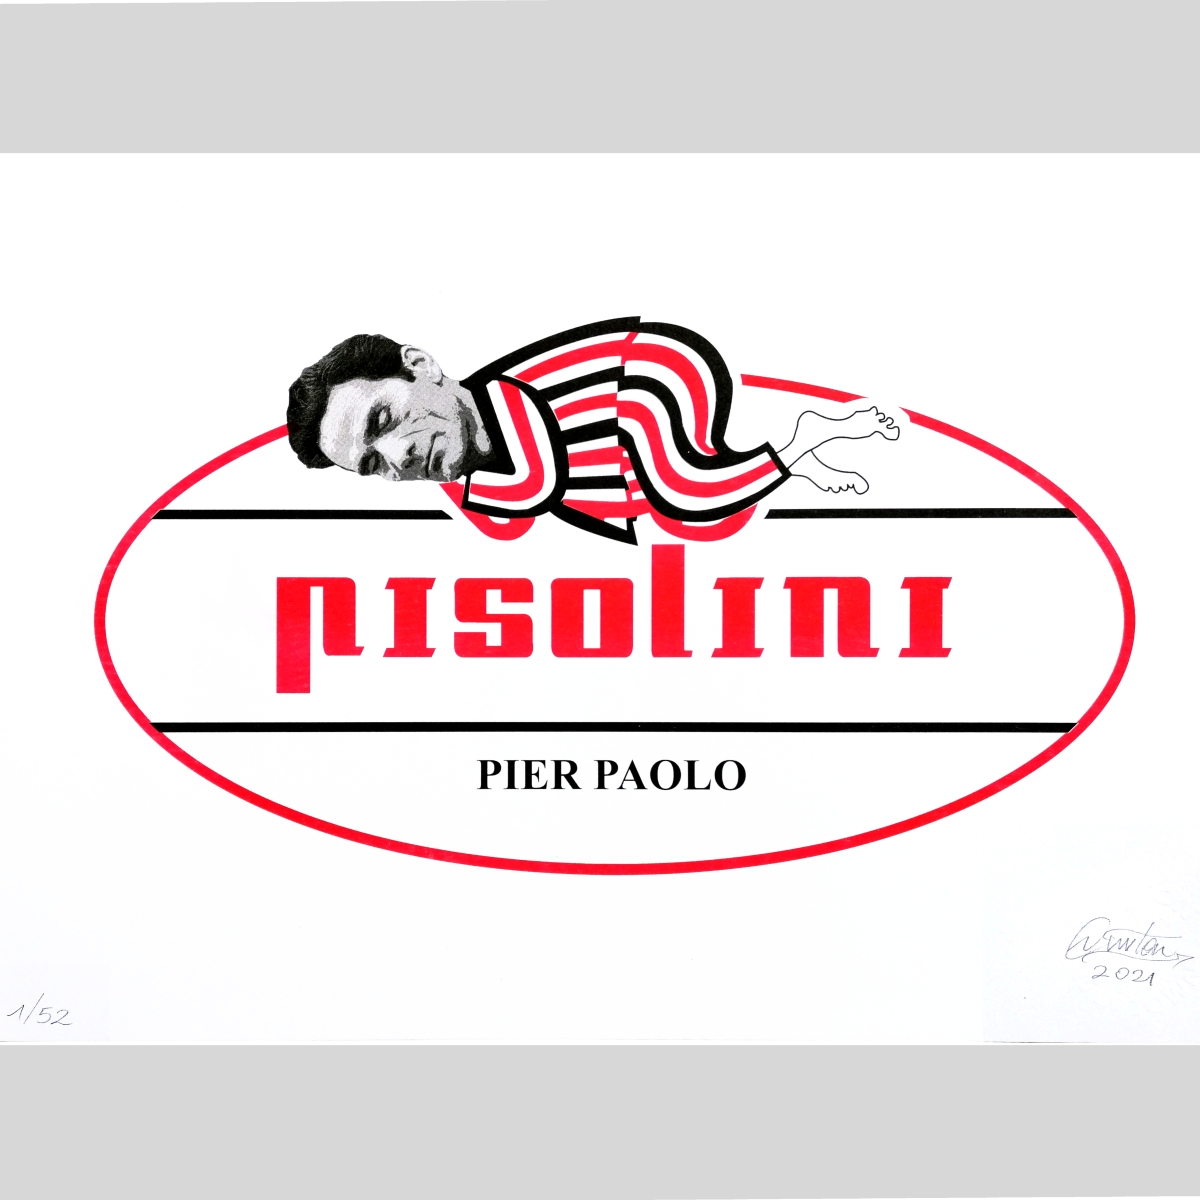 Pier Paolo Pisolini – Risograph edition